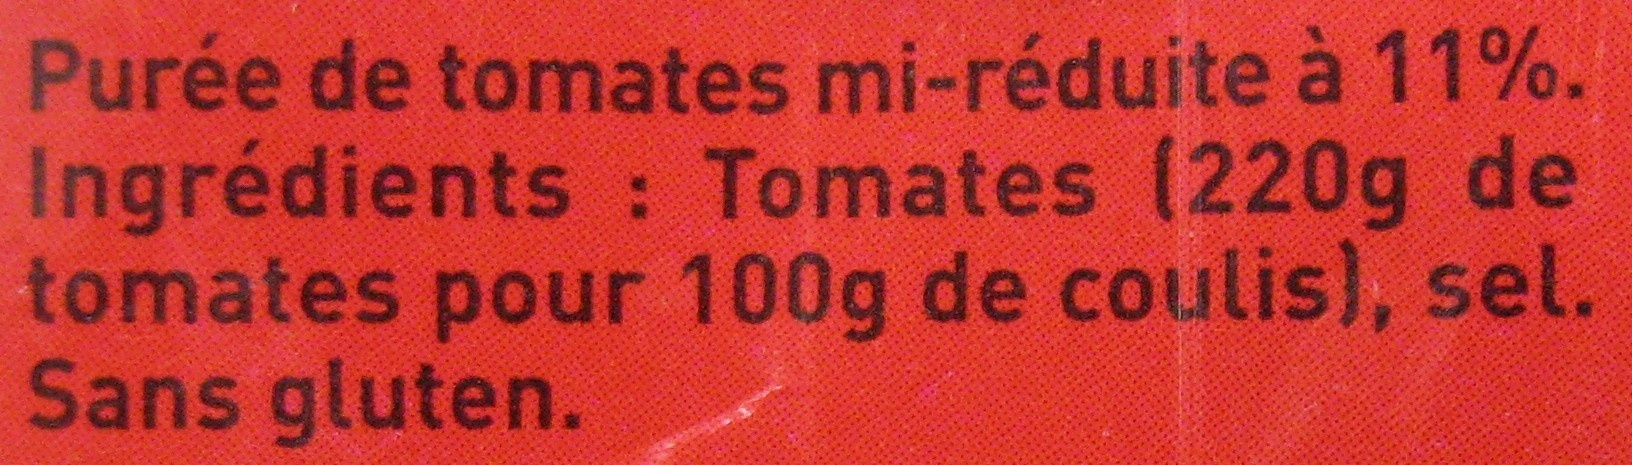 Coulis de tomate - Ingrediënten - fr